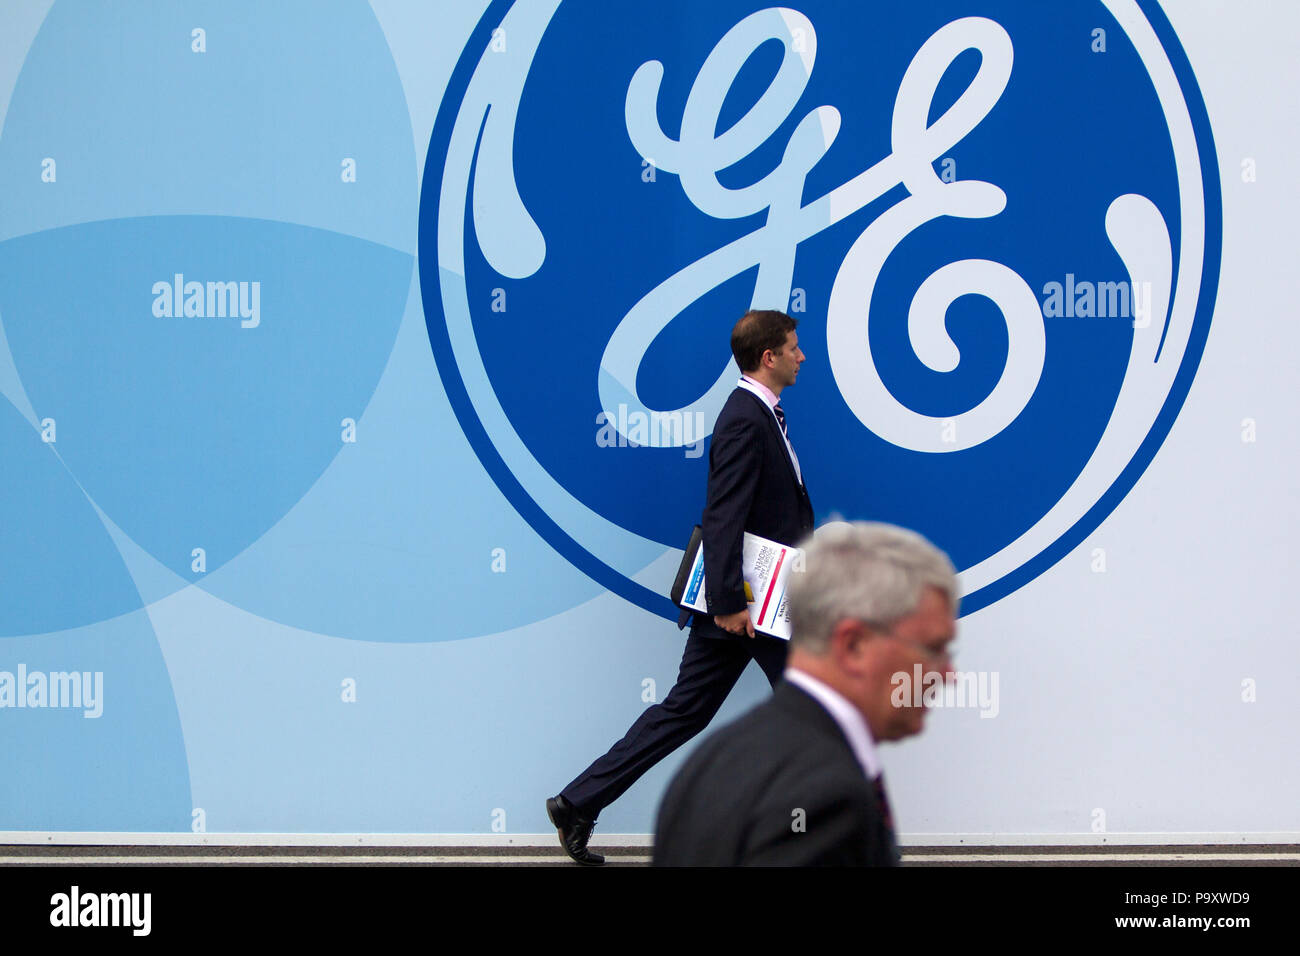 Besucher der Farnborough Airshow in der Nähe des abgebildeten Bild von General Electric Logo. General Electric (GE) ist eine US-amerikanische multinationale Konglomerat Corp. Stockfoto